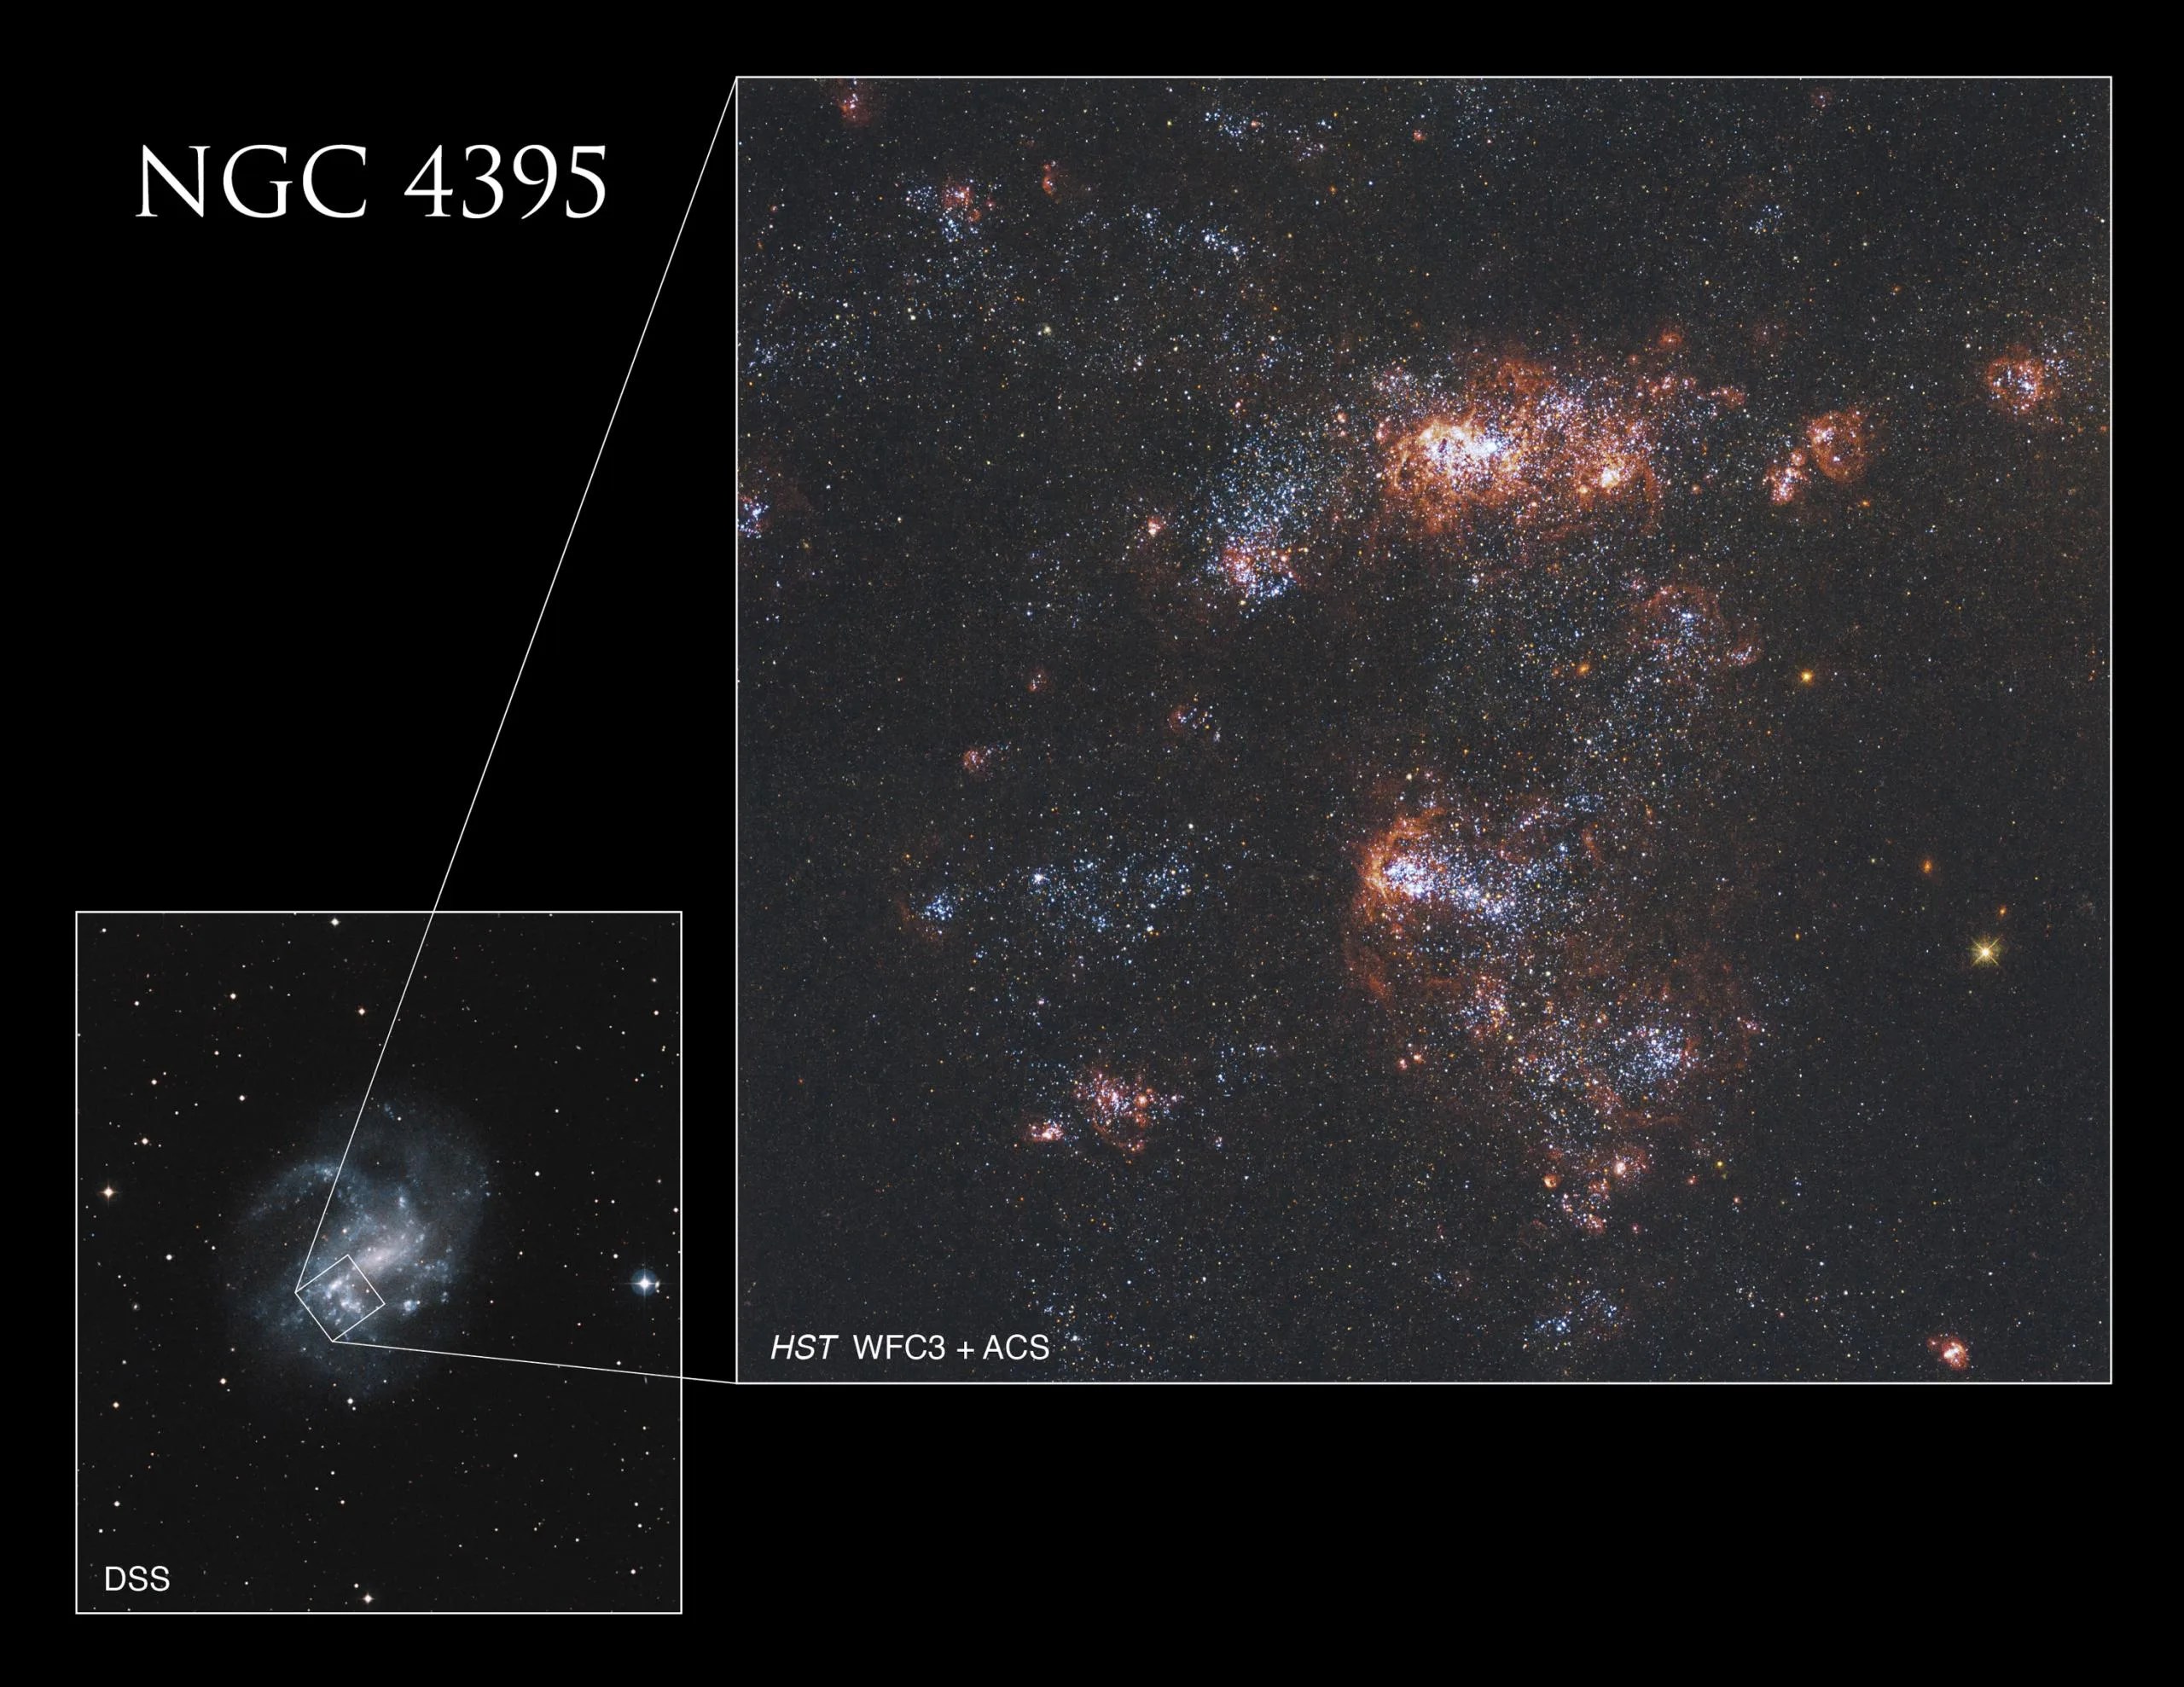 La imagen más grande de Hubble observa uno de los brazos espirales de de NGC 4395. La imagen más pequeña del Sondeo Digital del Cielo, en la esquina inferior izquierda, muestra la ubicación de la imagen de Hubble en el contexto de la galaxia completa.